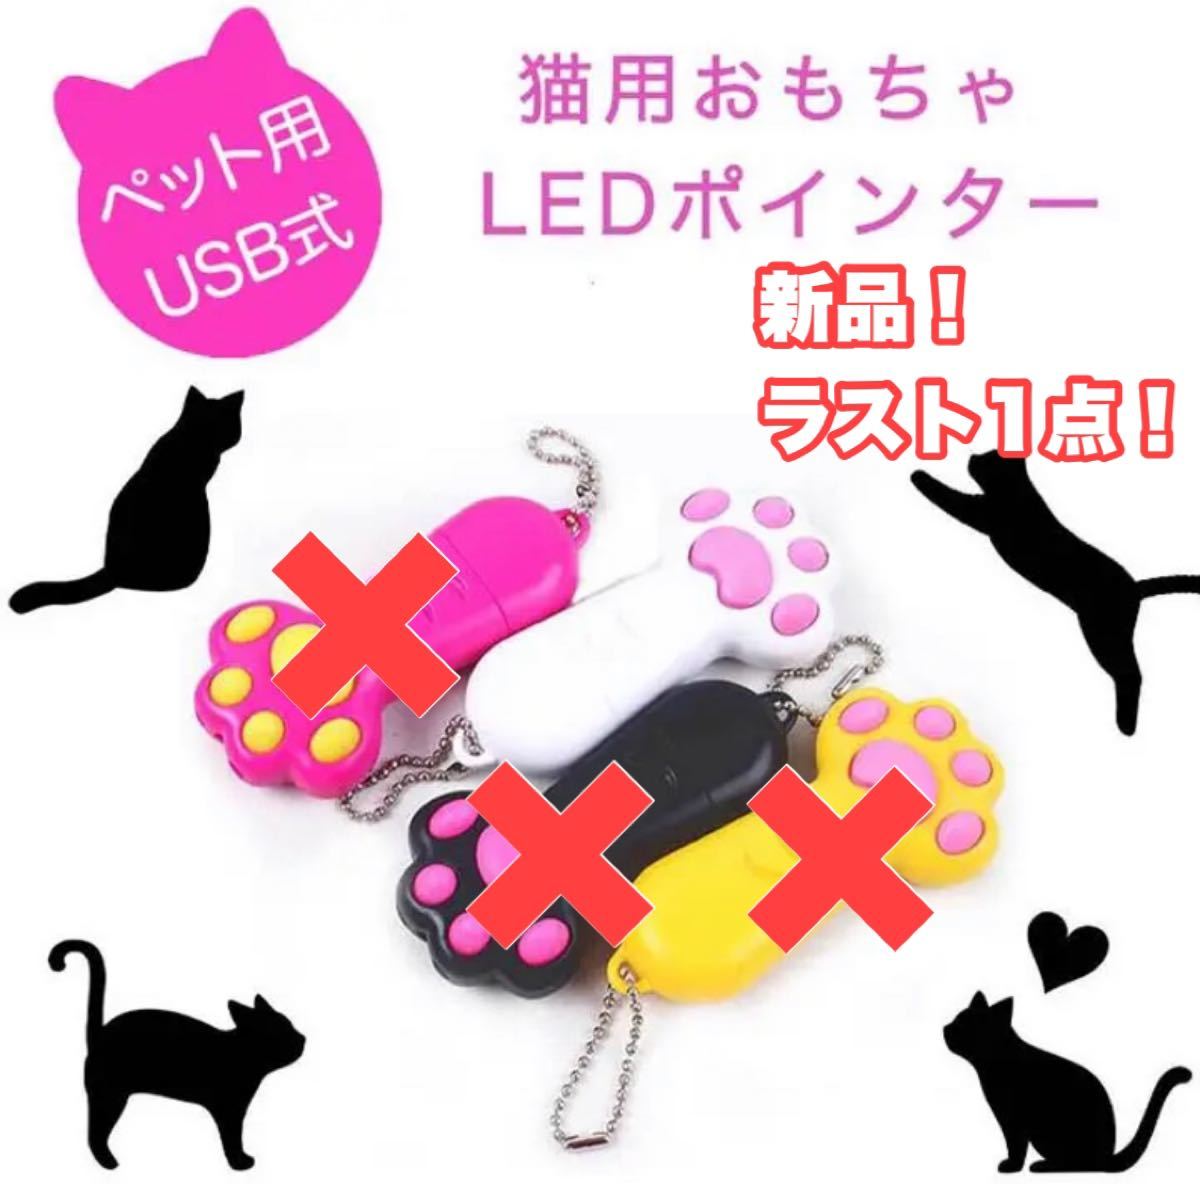 猫用おもちゃ ポインター おもちゃ LED LEDポインター 猫 ねこ ネコ オモチャ 肉球 運動 ペット用品